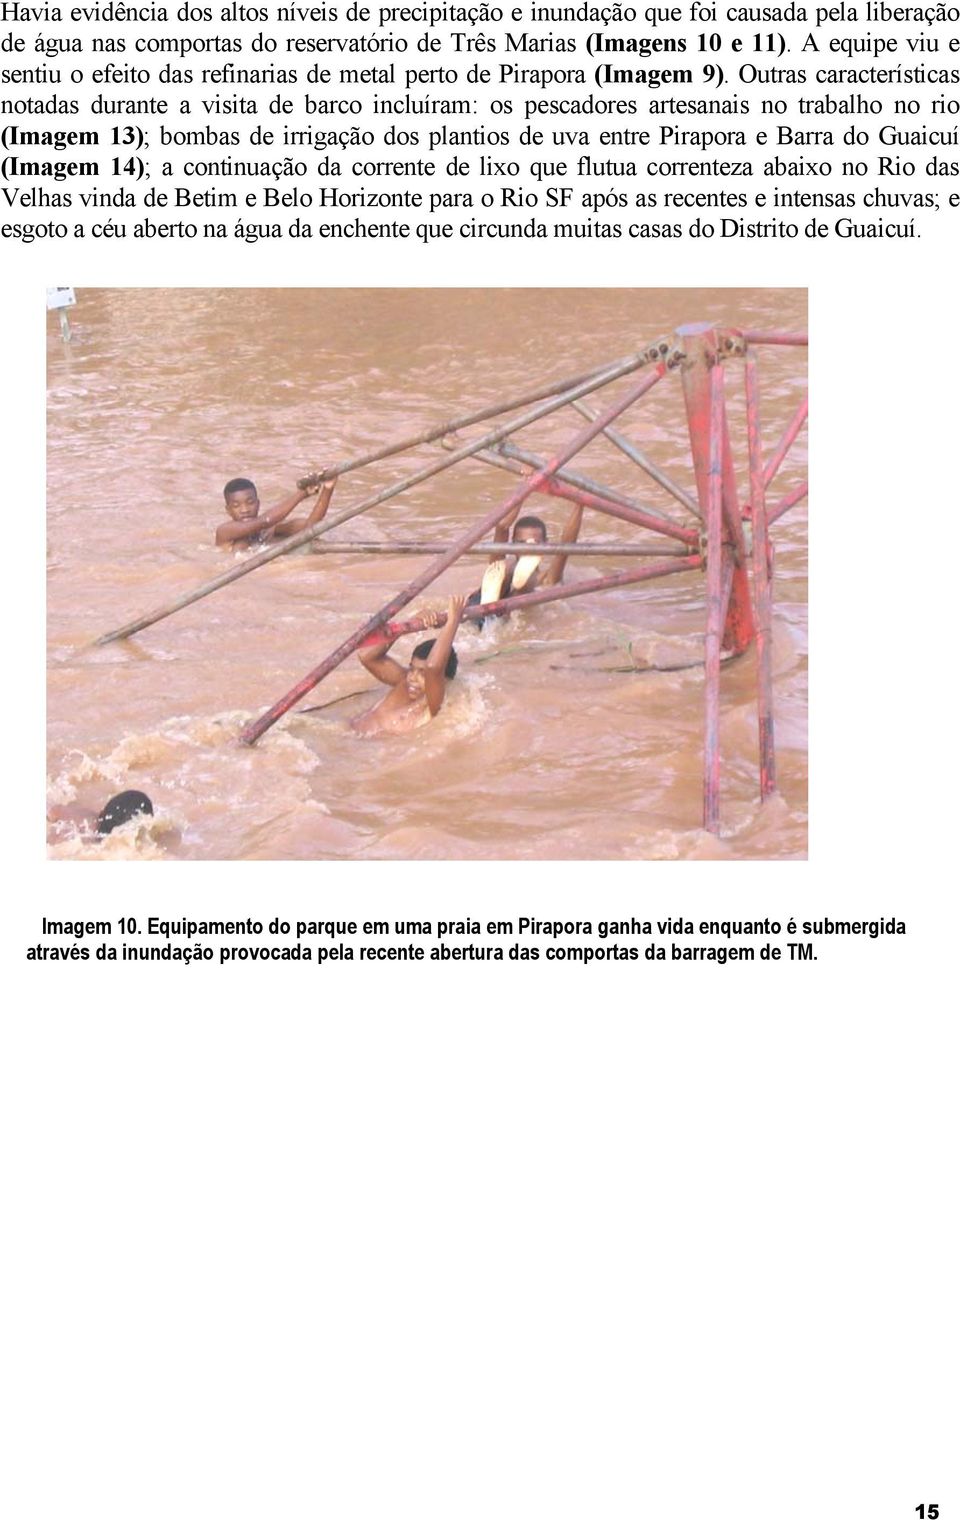 Outras características notadas durante a visita de barco incluíram: os pescadores artesanais no trabalho no rio (Imagem 13); bombas de irrigação dos plantios de uva entre Pirapora e Barra do Guaicuí